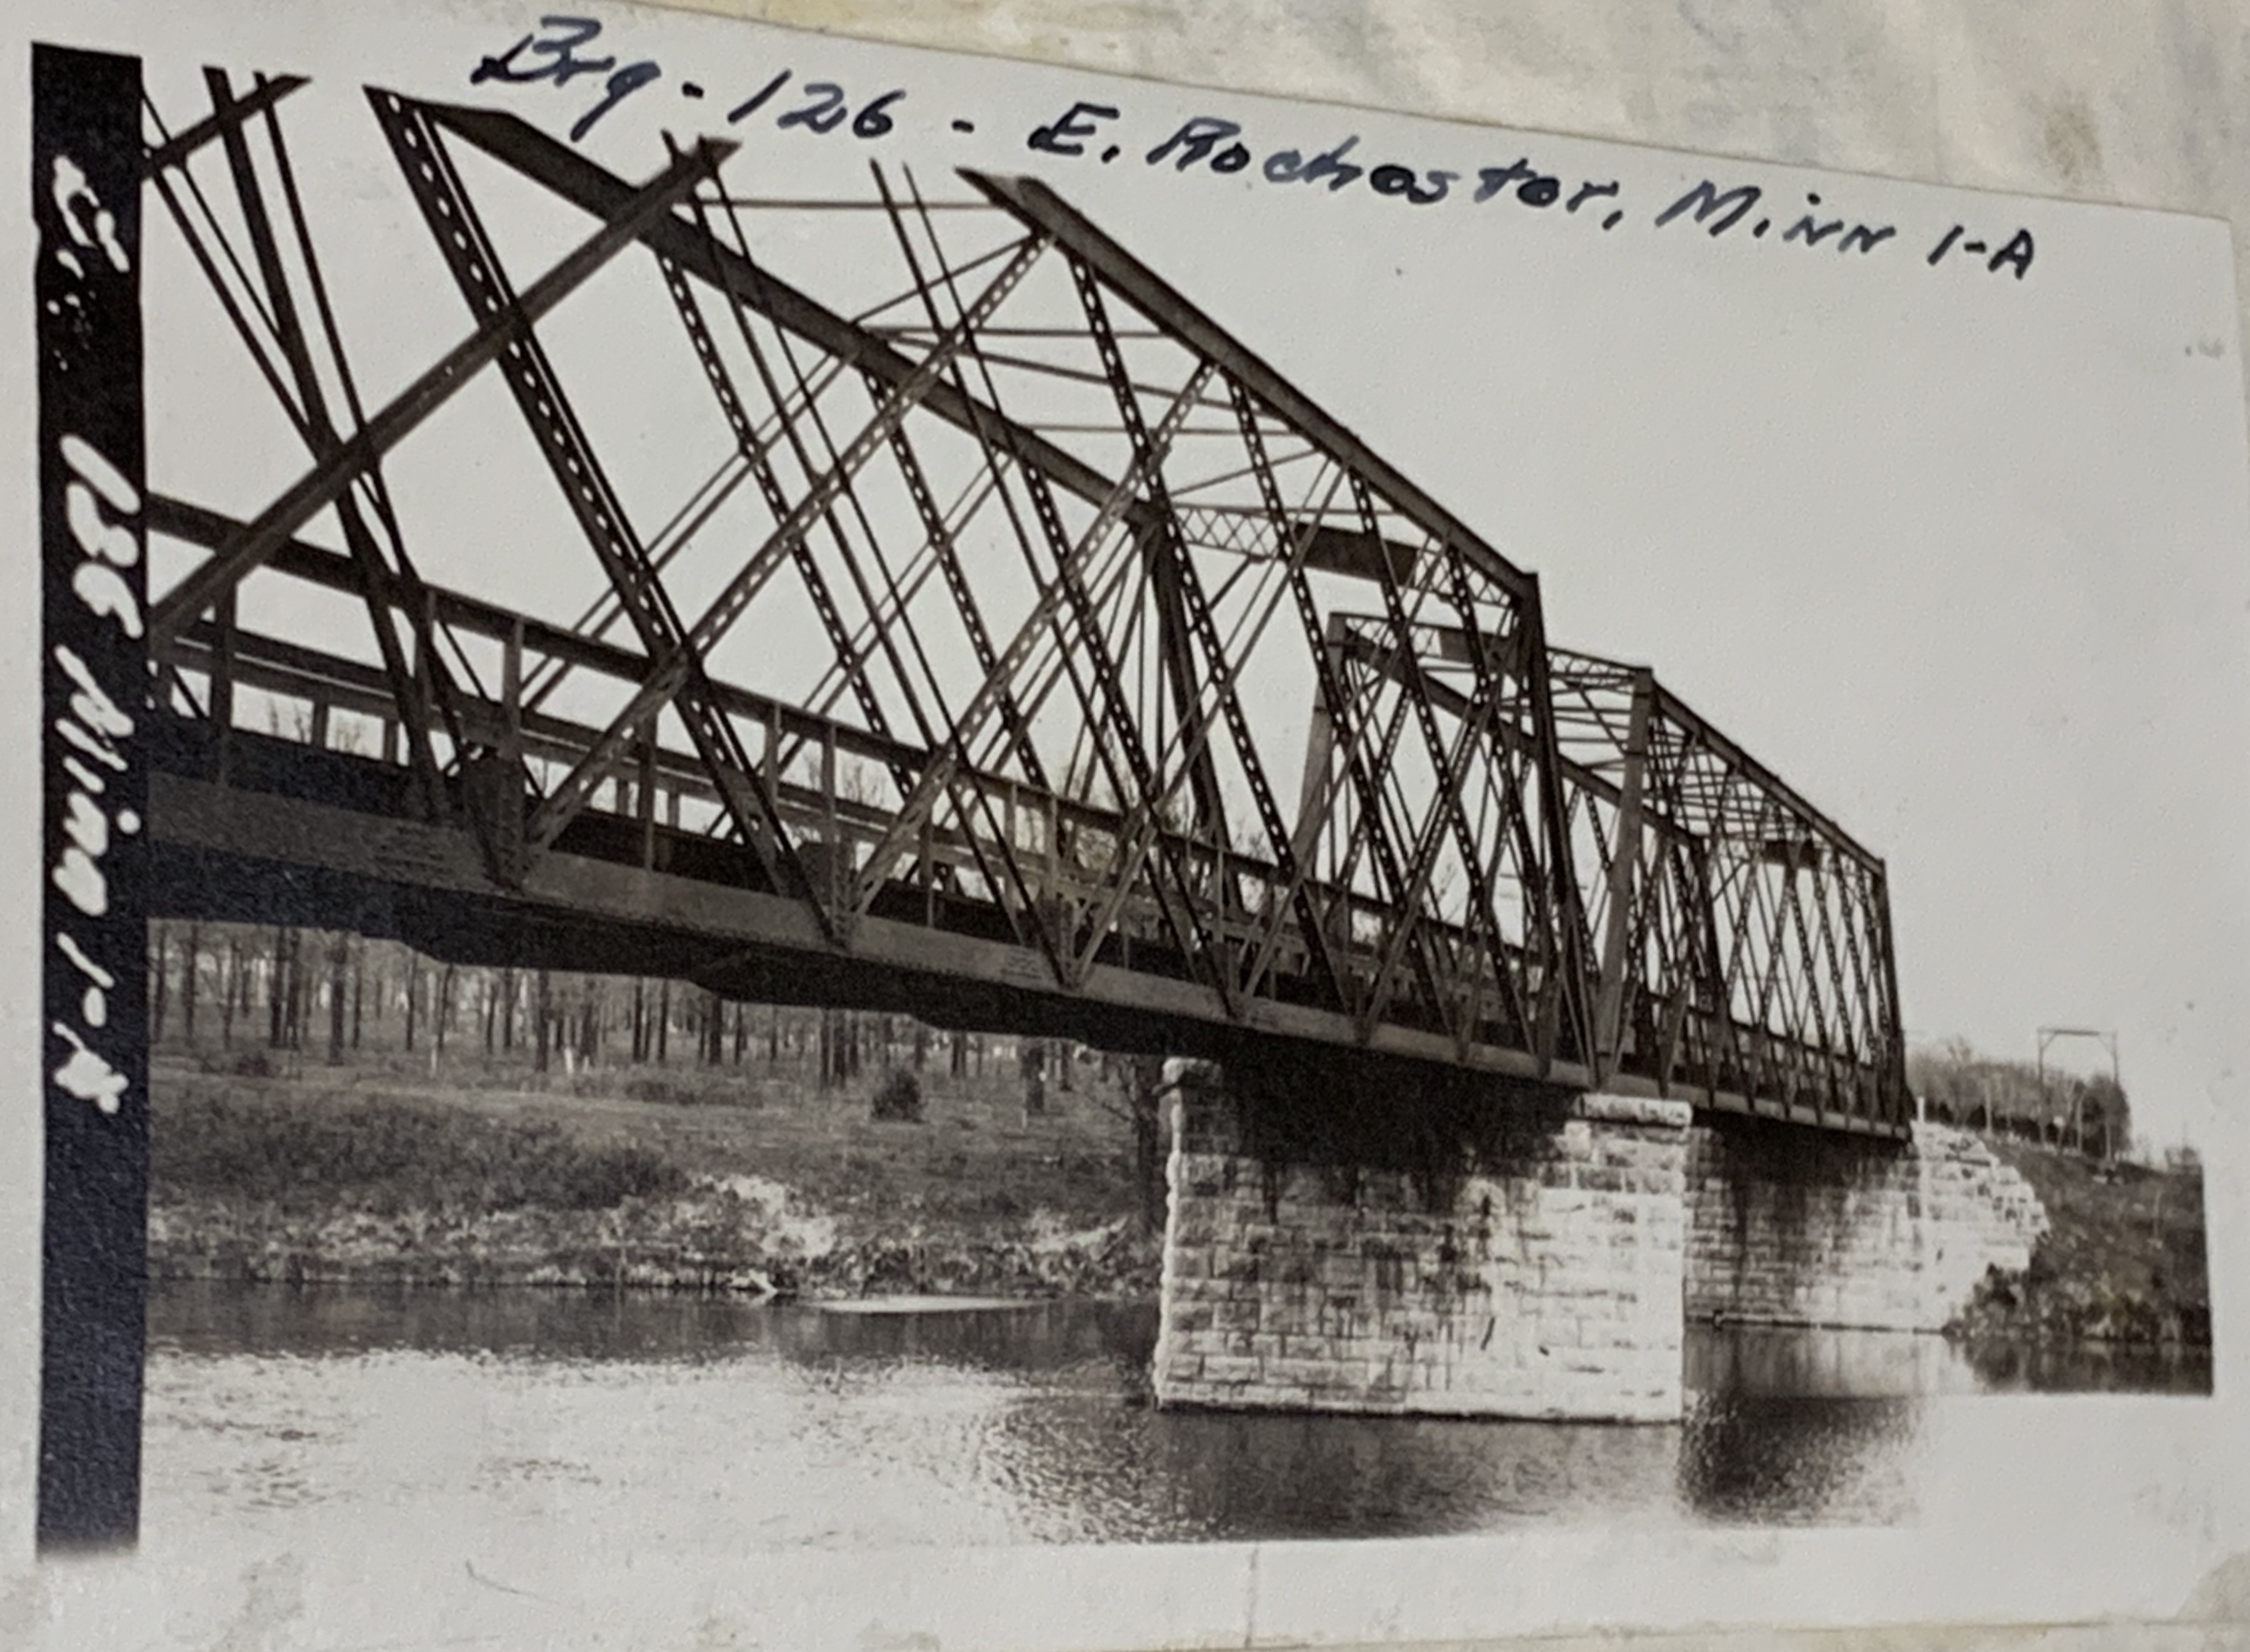 Bridge #126 crossing the Zumbro River at Rochester, Minnesota